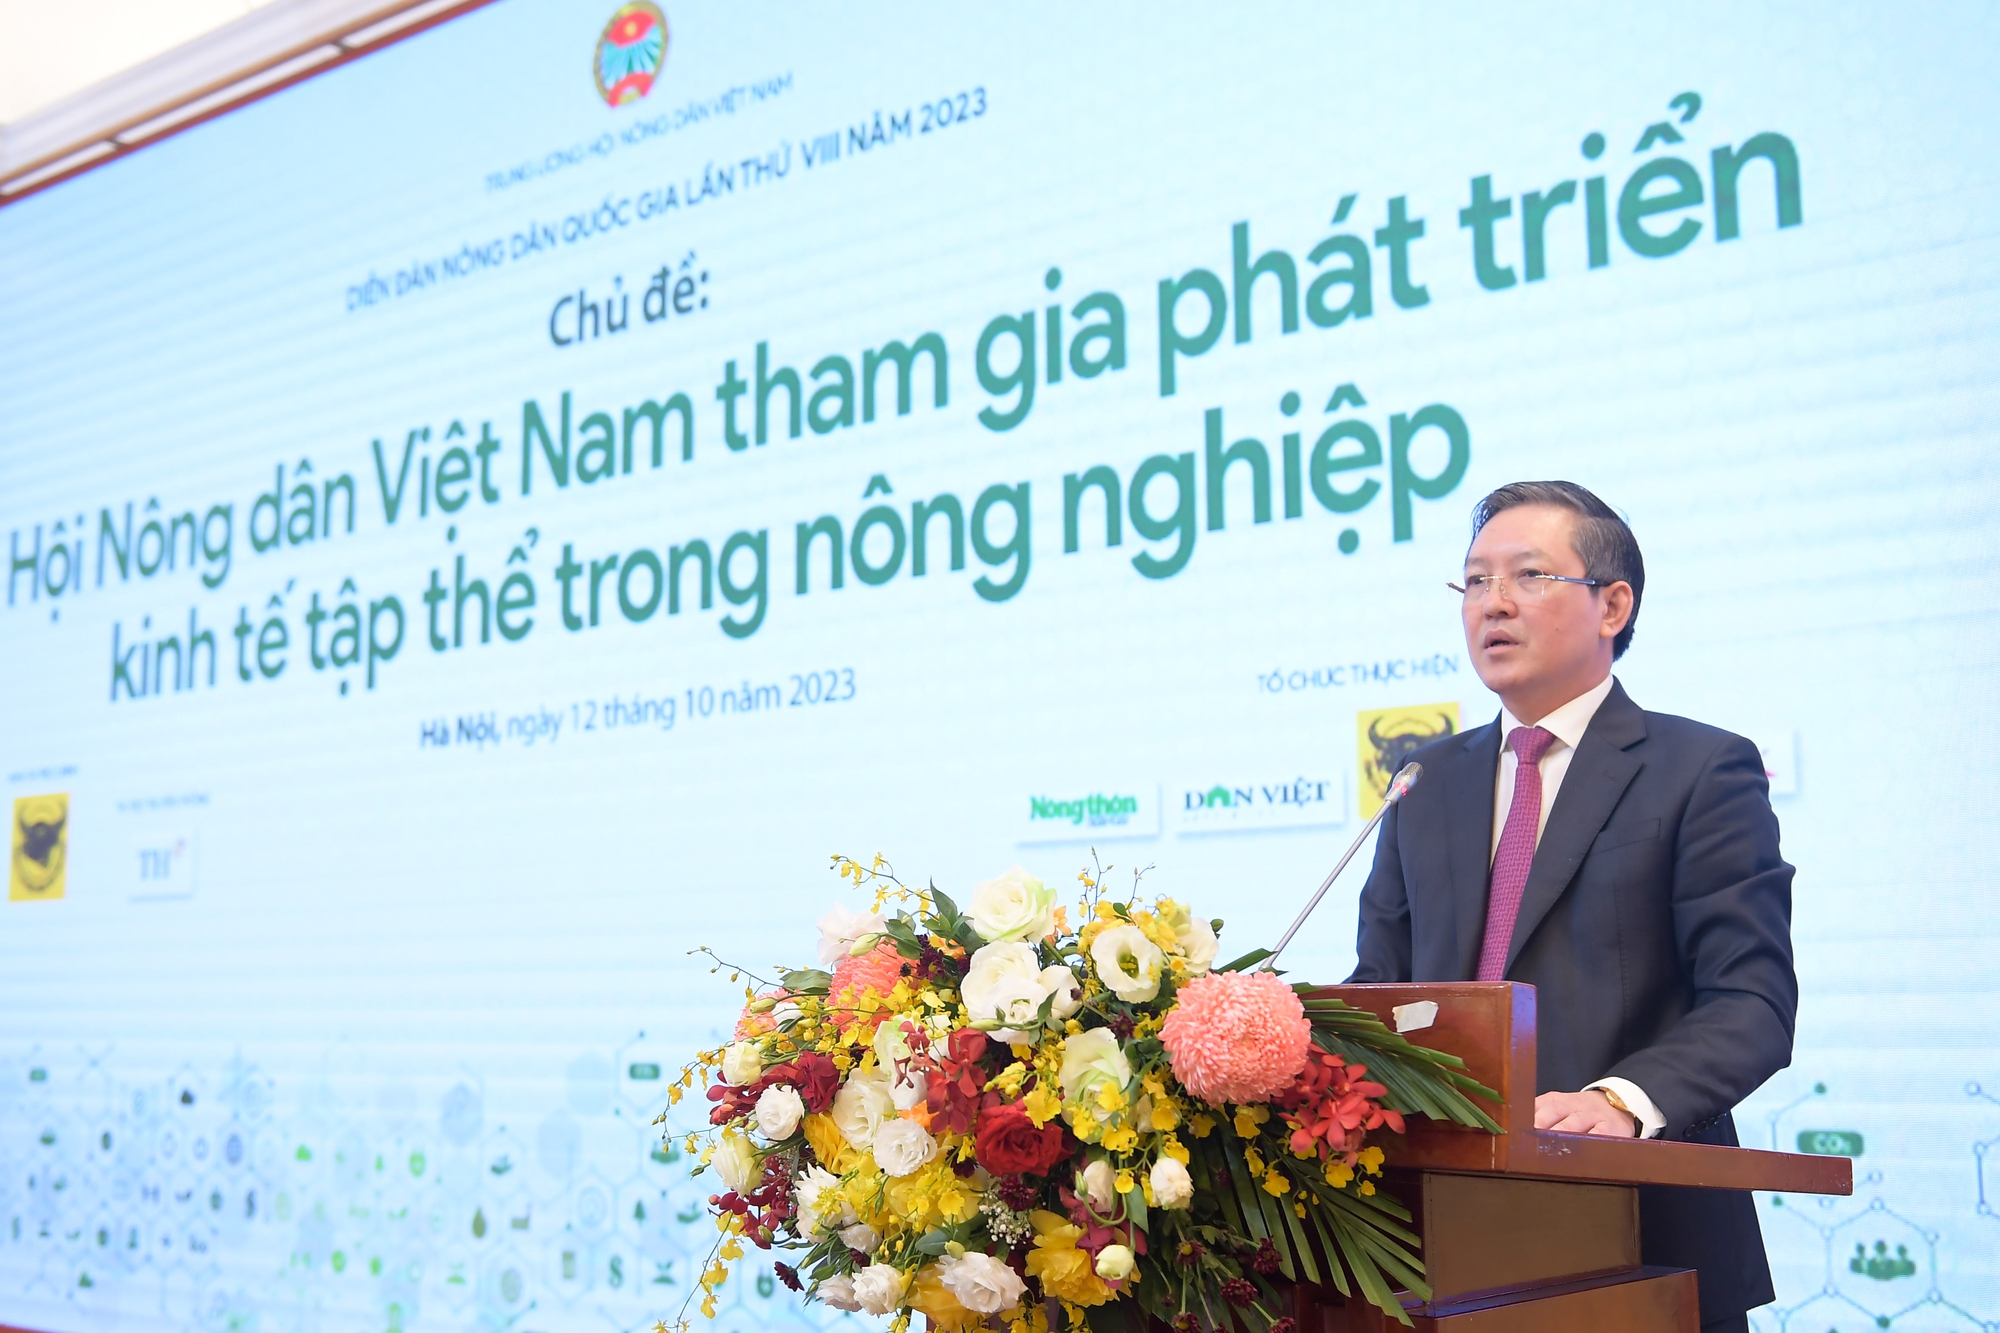 Chủ tịch Hội Nông dân Việt Nam Lương Quốc Đoàn chia sẻ 3 vấn đề cốt lõi trong phát triển kinh tế tập thể - Ảnh 1.